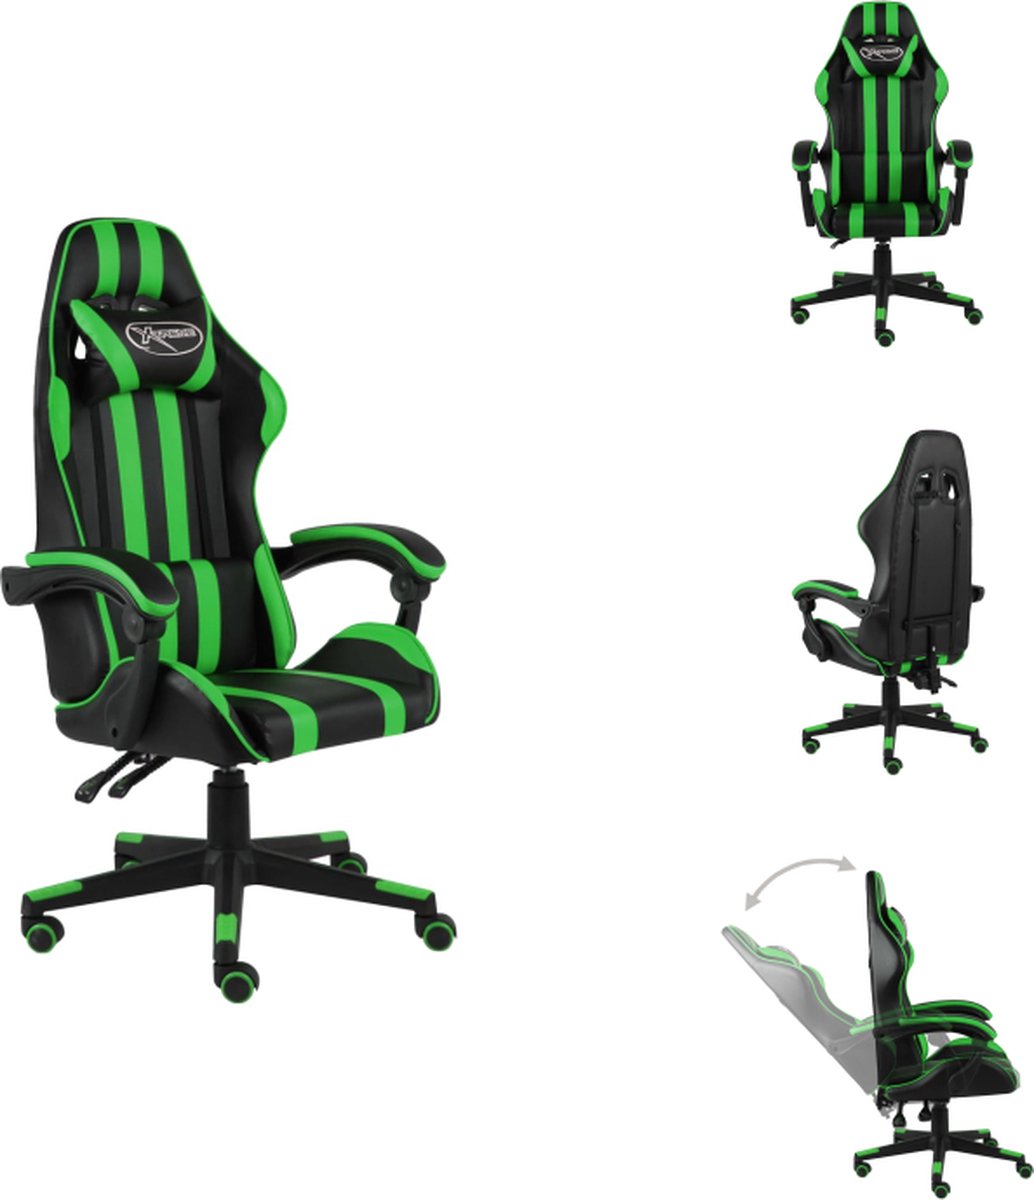 VidaXL Gamestoel Racestoel voor gamen of werken Zwart Groen 62 x 69cm Kunstleer Verstelbaar Bureaustoel